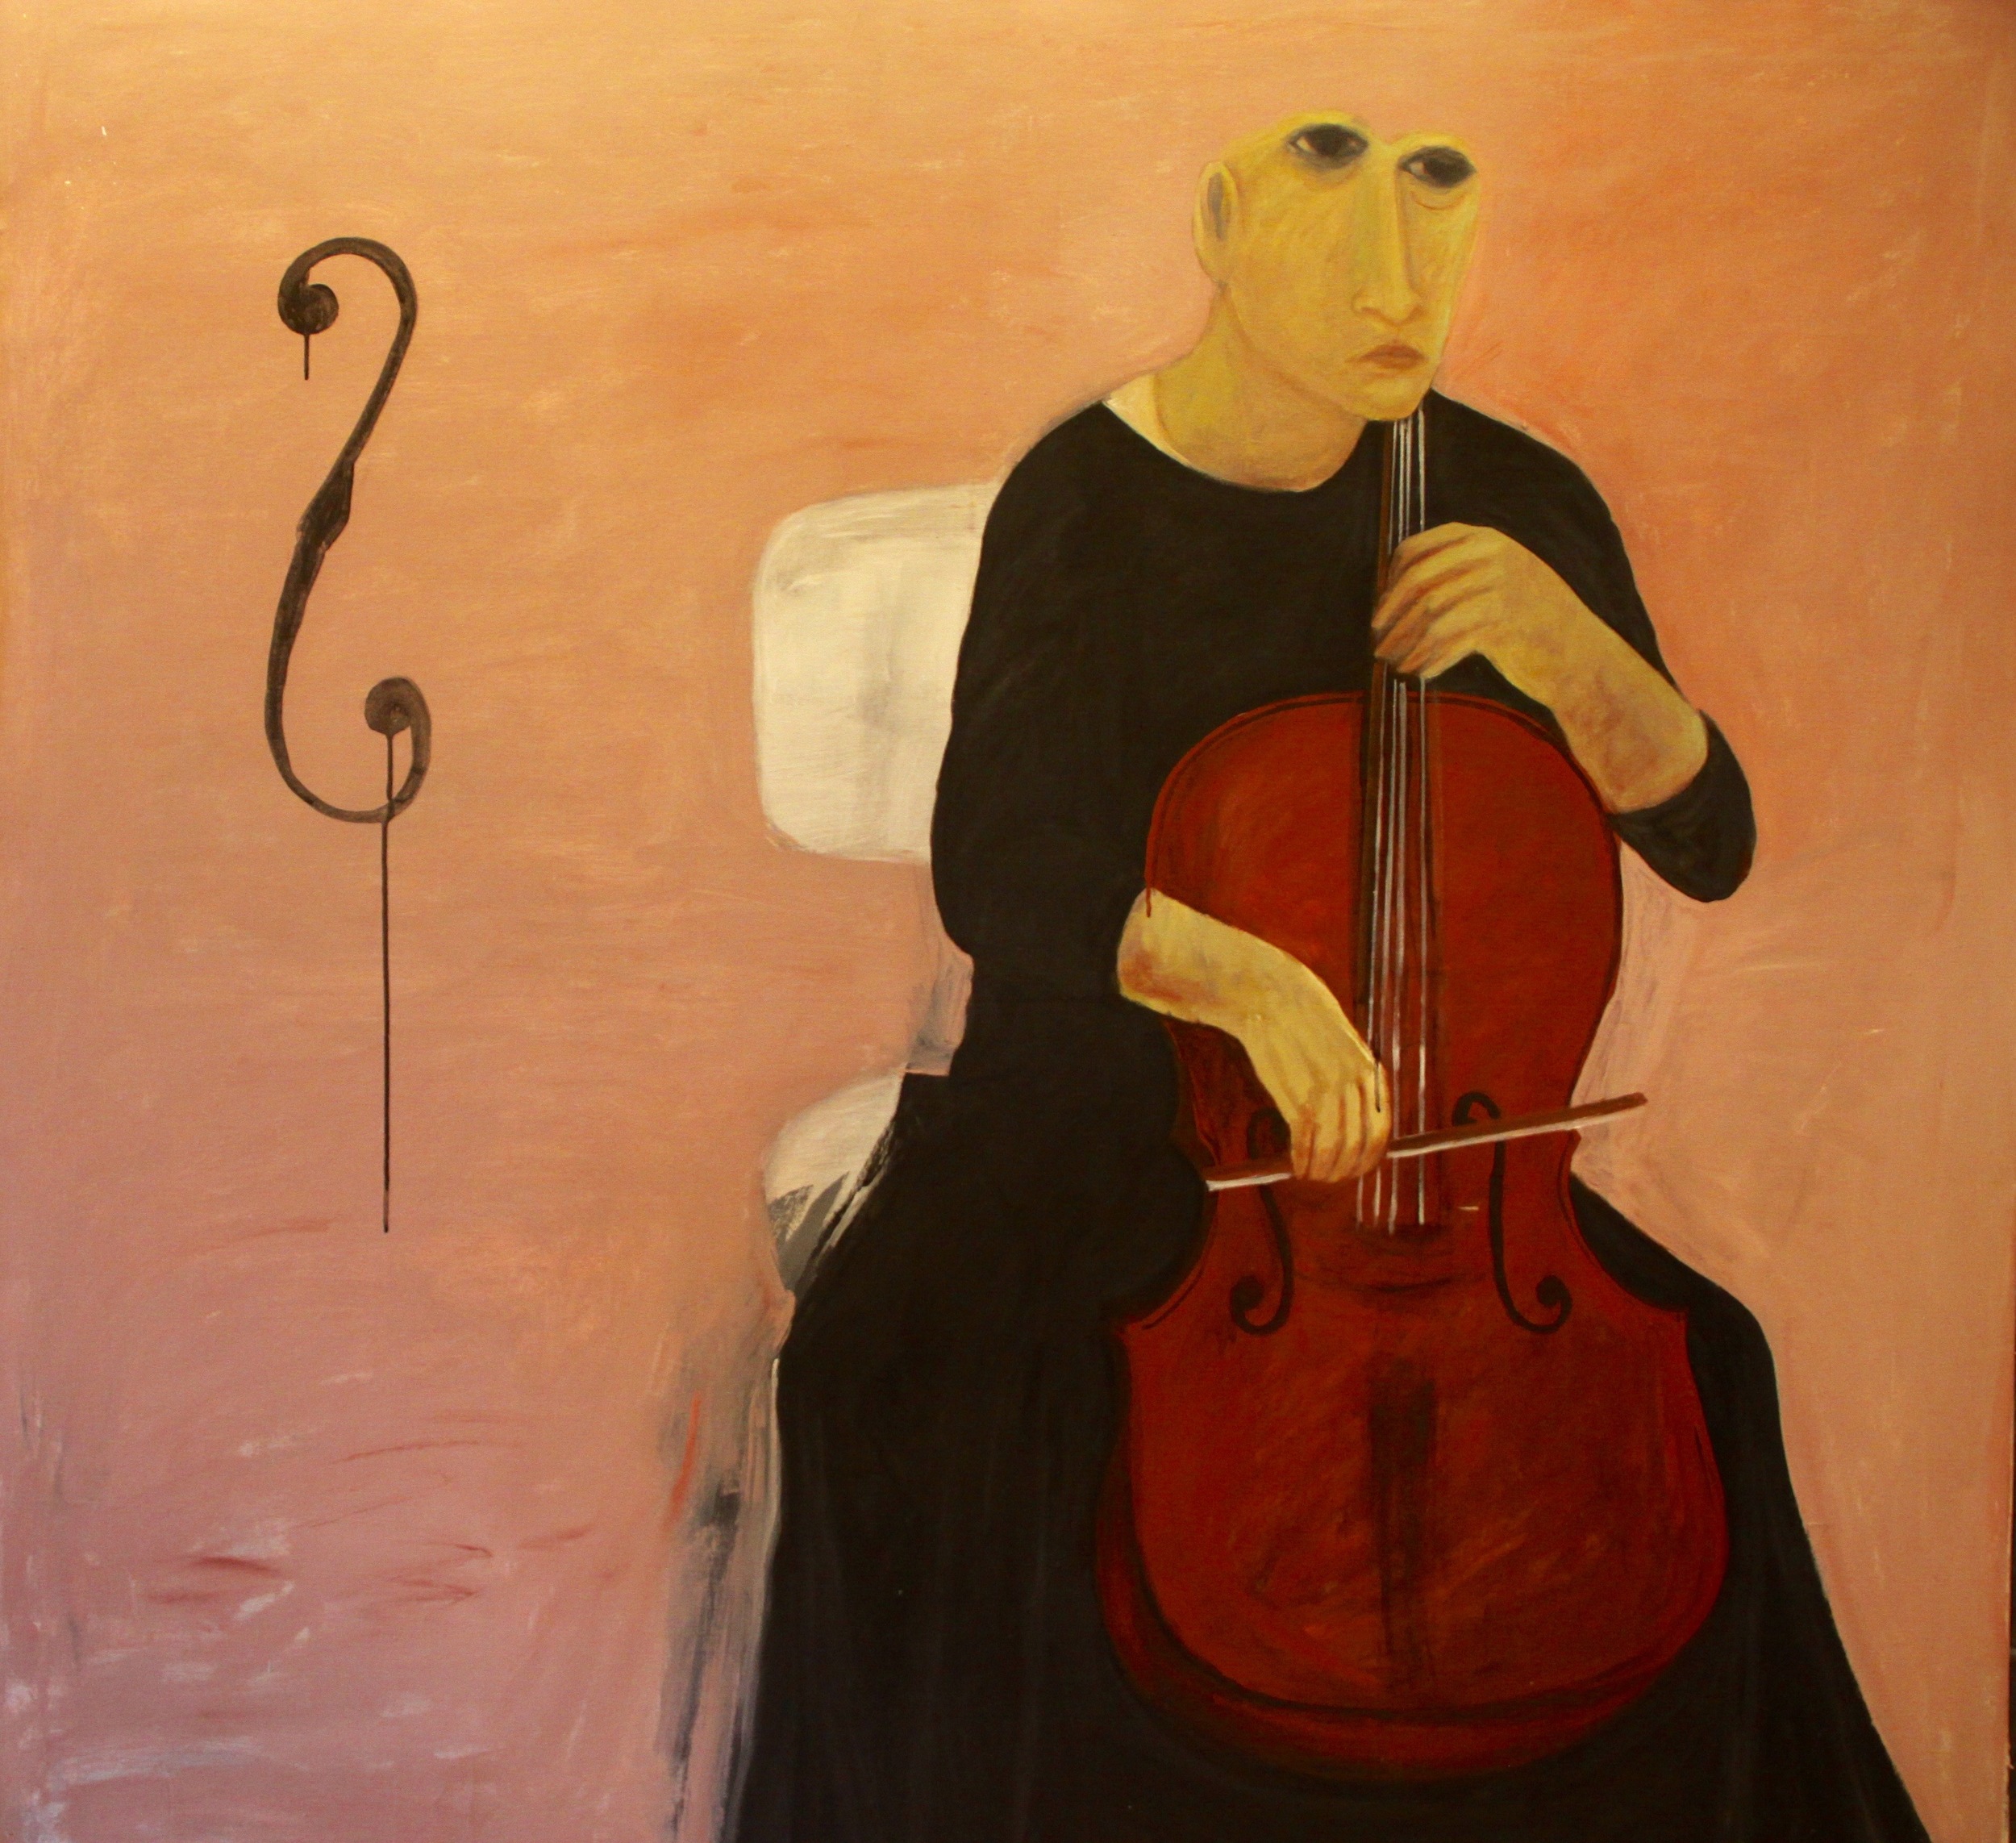  Ahmed Morsi, The Cello Player,&nbsp;2007,&nbsp;Acrylic on canvas,&nbsp;173 x 173 cm.    